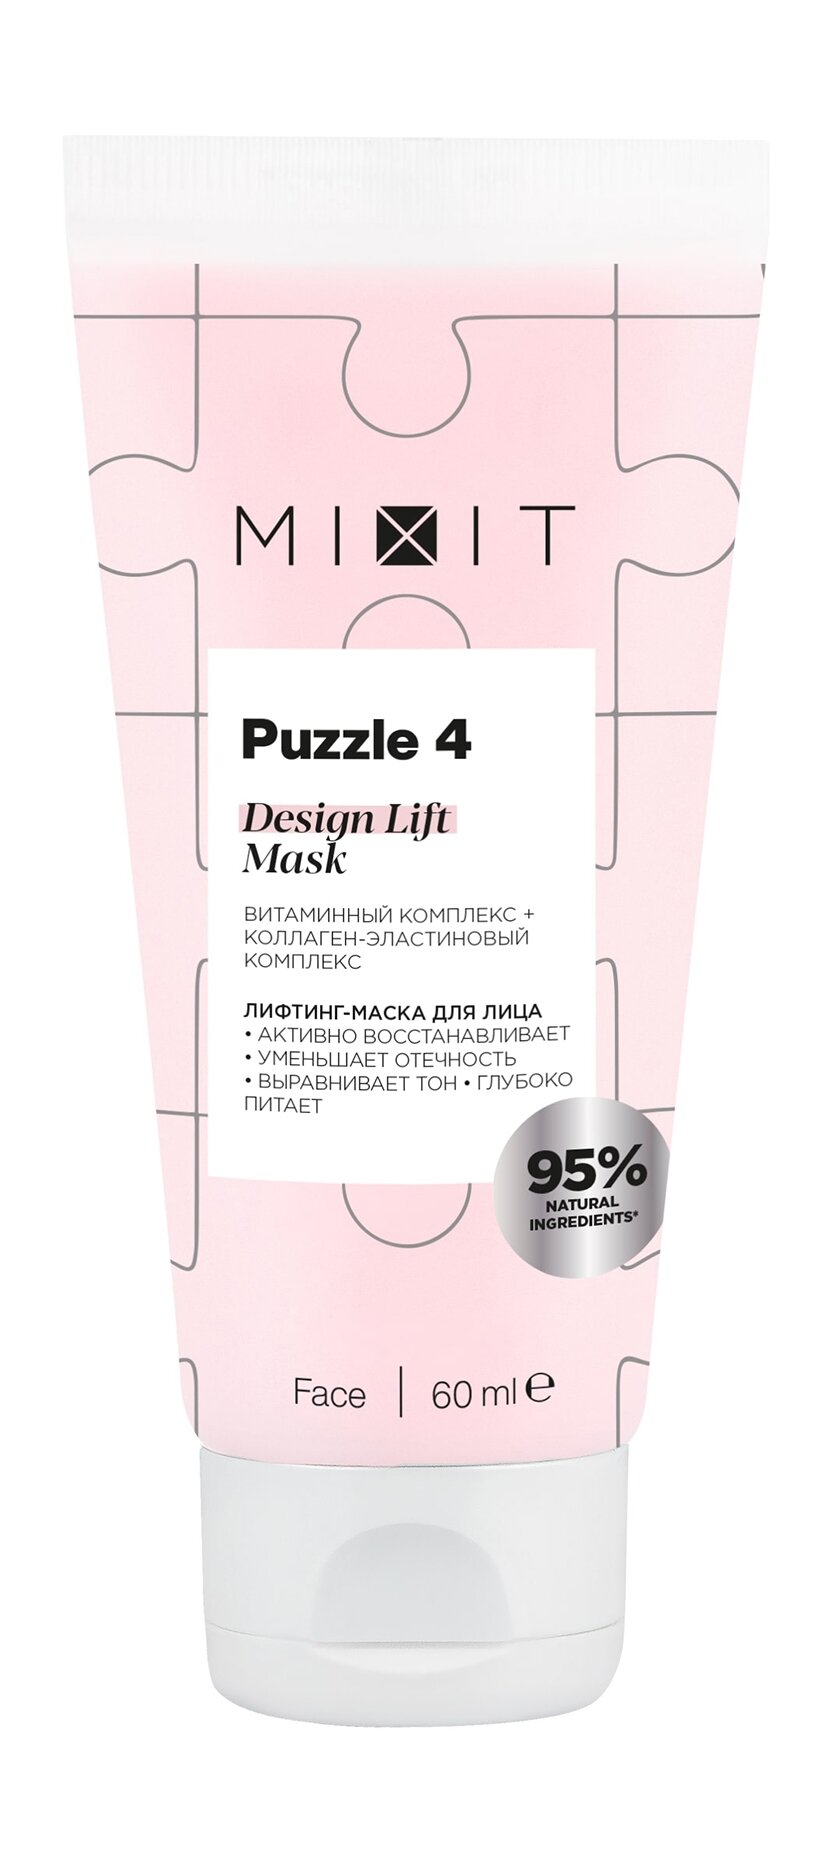 MIXIT Лифтинг-маска для лица MIXIT Puzzle 4 с витаминным и коллаген-эластиновым комплексом, 60 мл